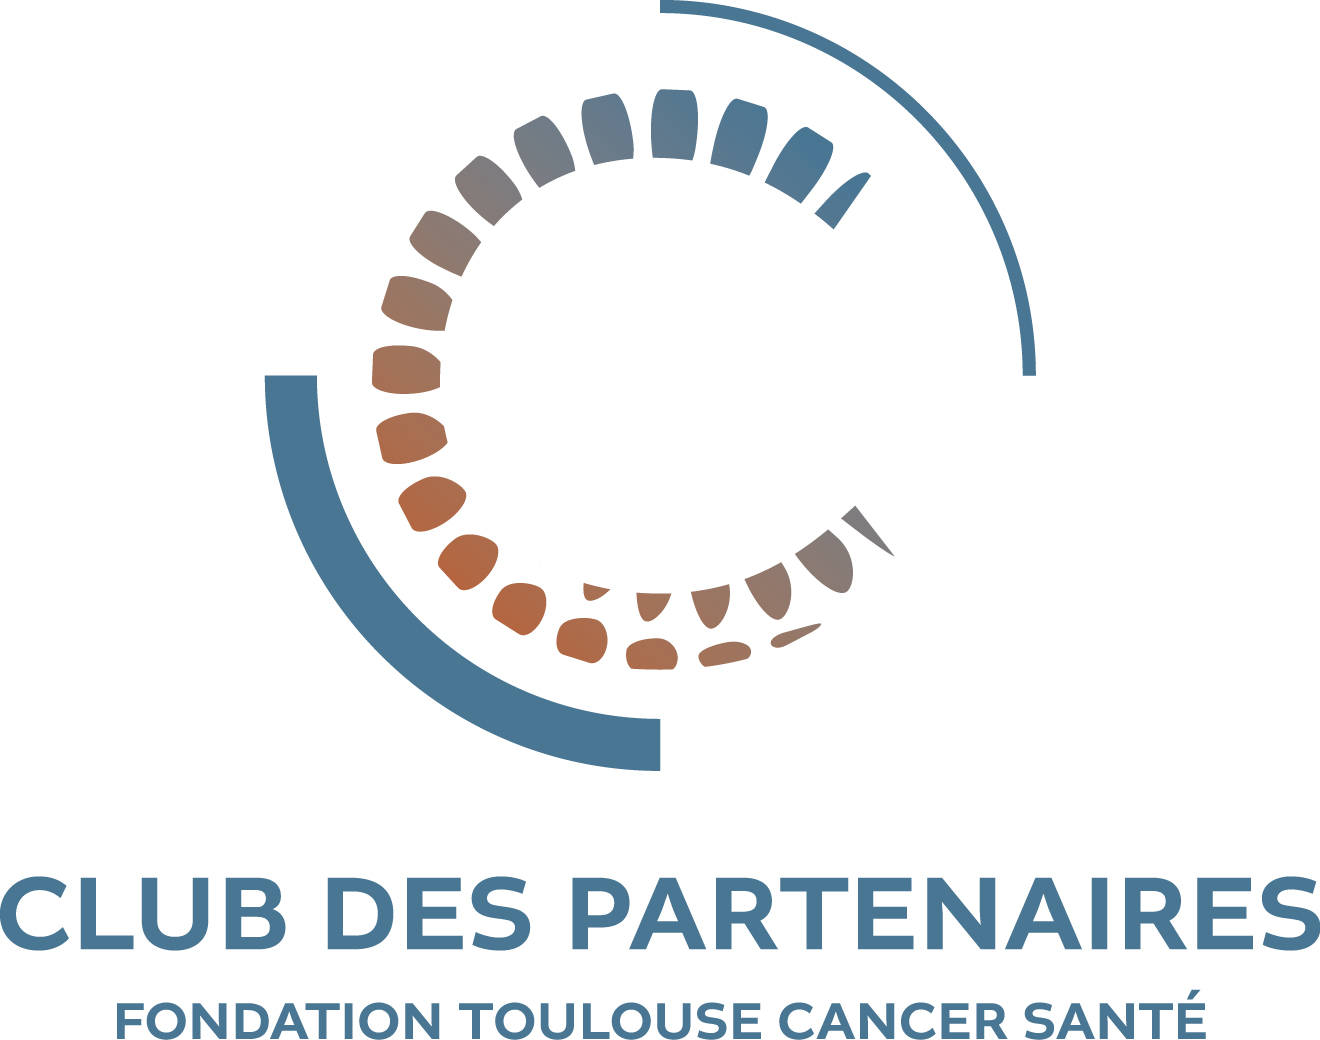 Voici le logo de ce nouveau Club des Partenaires. (Photo : Fondation Toulouse Cancer Santé)